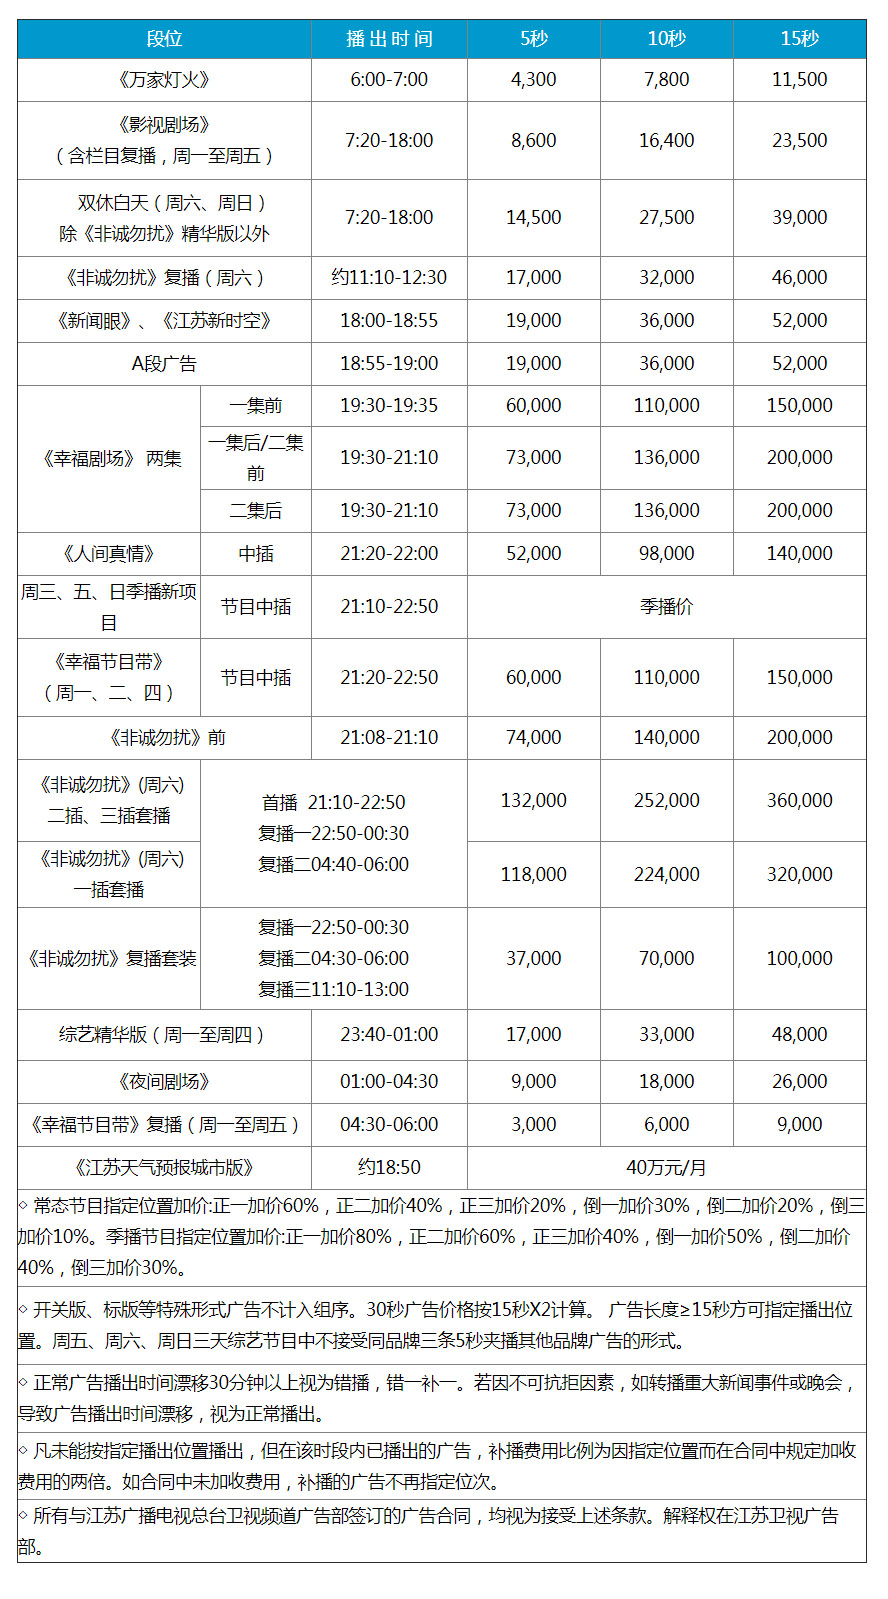 2018年江苏卫视广告刊例价格表